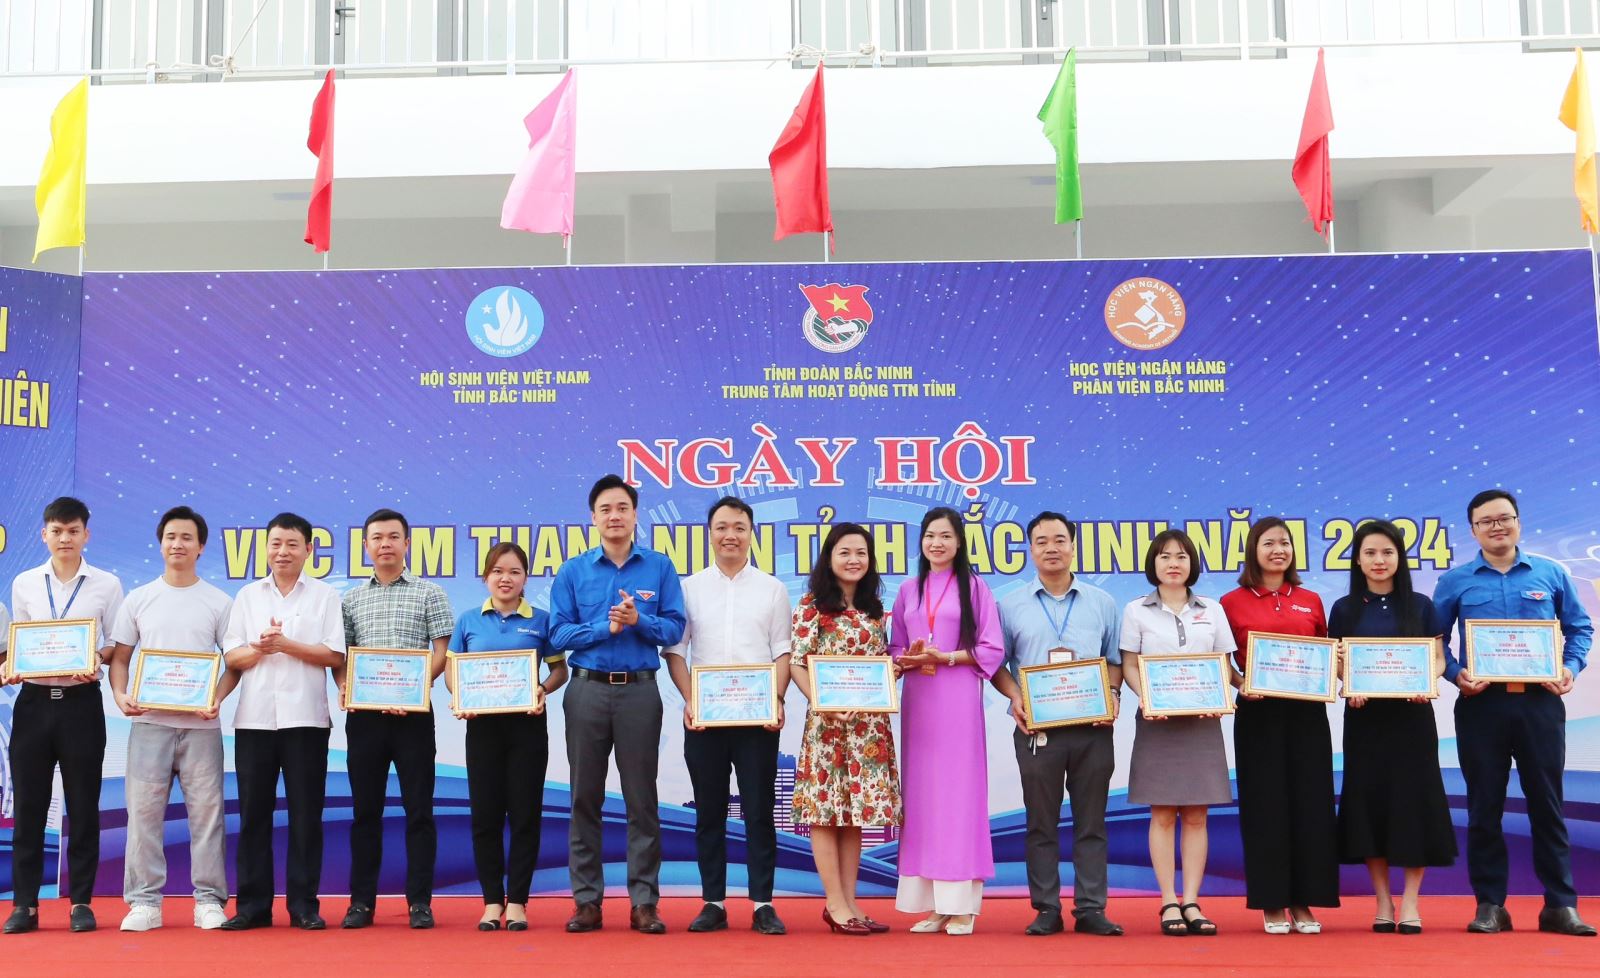 Sôi nổi các hoạt động trong “Ngày hội việc làm thanh niên tỉnh Bắc Ninh năm 2024”